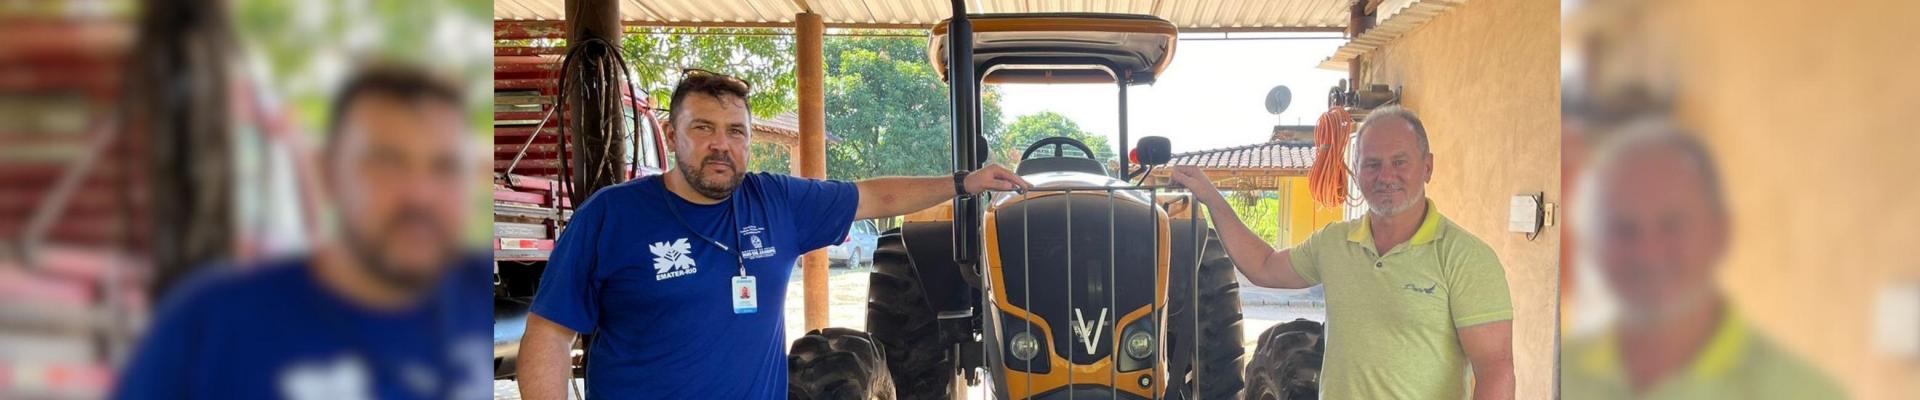 Tratores adquiridos pelo Programa Nacional de Fortalecimento da Agricultura Familiar (PRONAF) impulsionam atividades agrícolas em Cachoeiras de Macacu